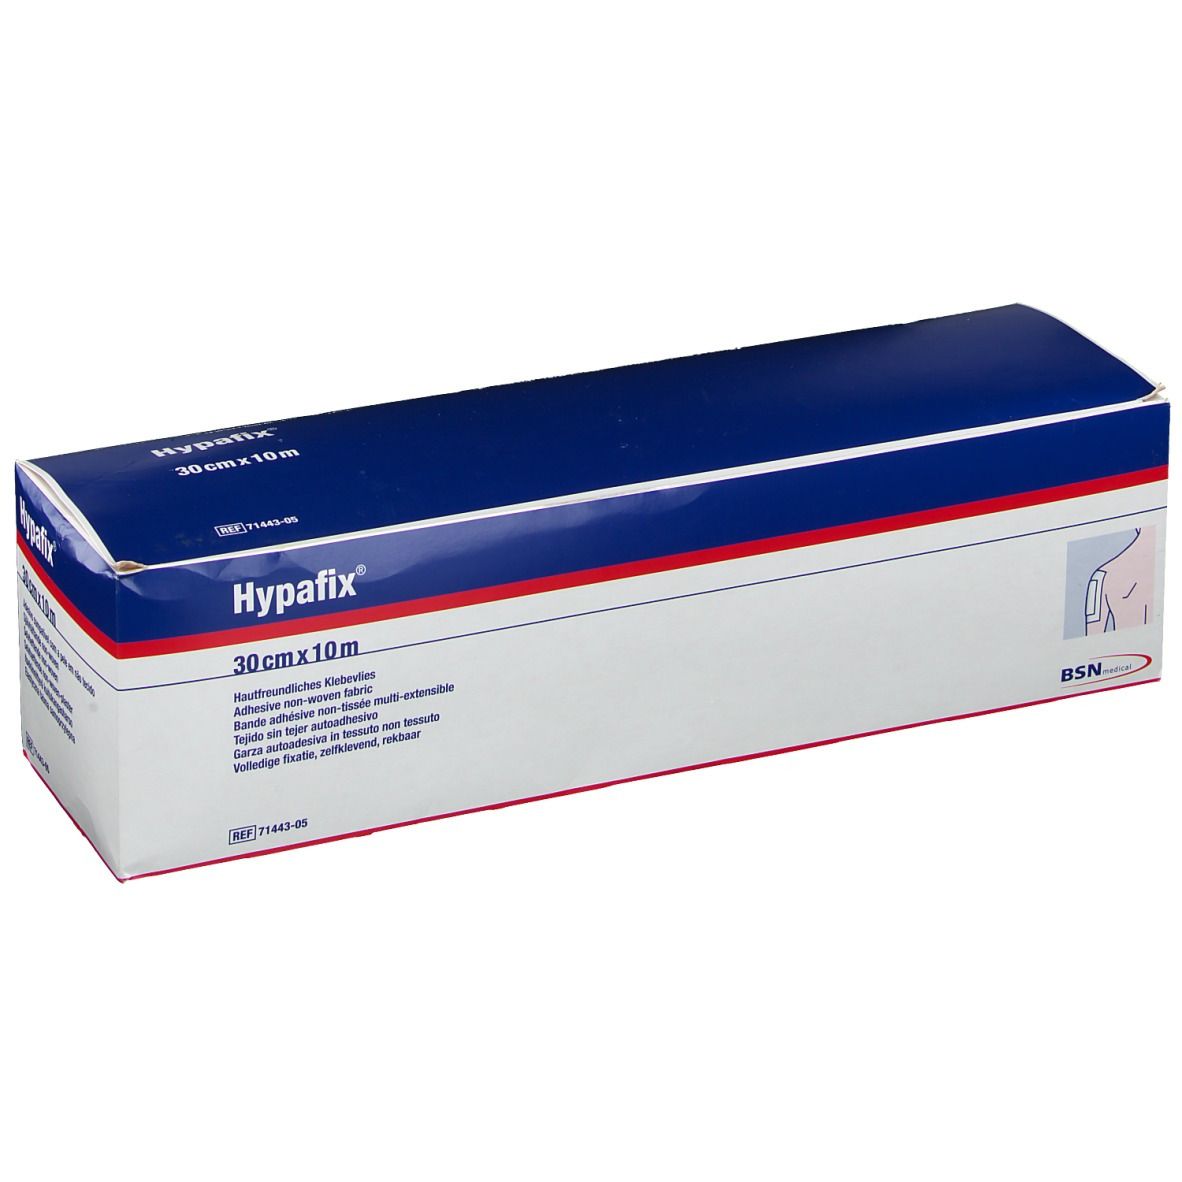 Hypafix ® 30 cm x 10 m